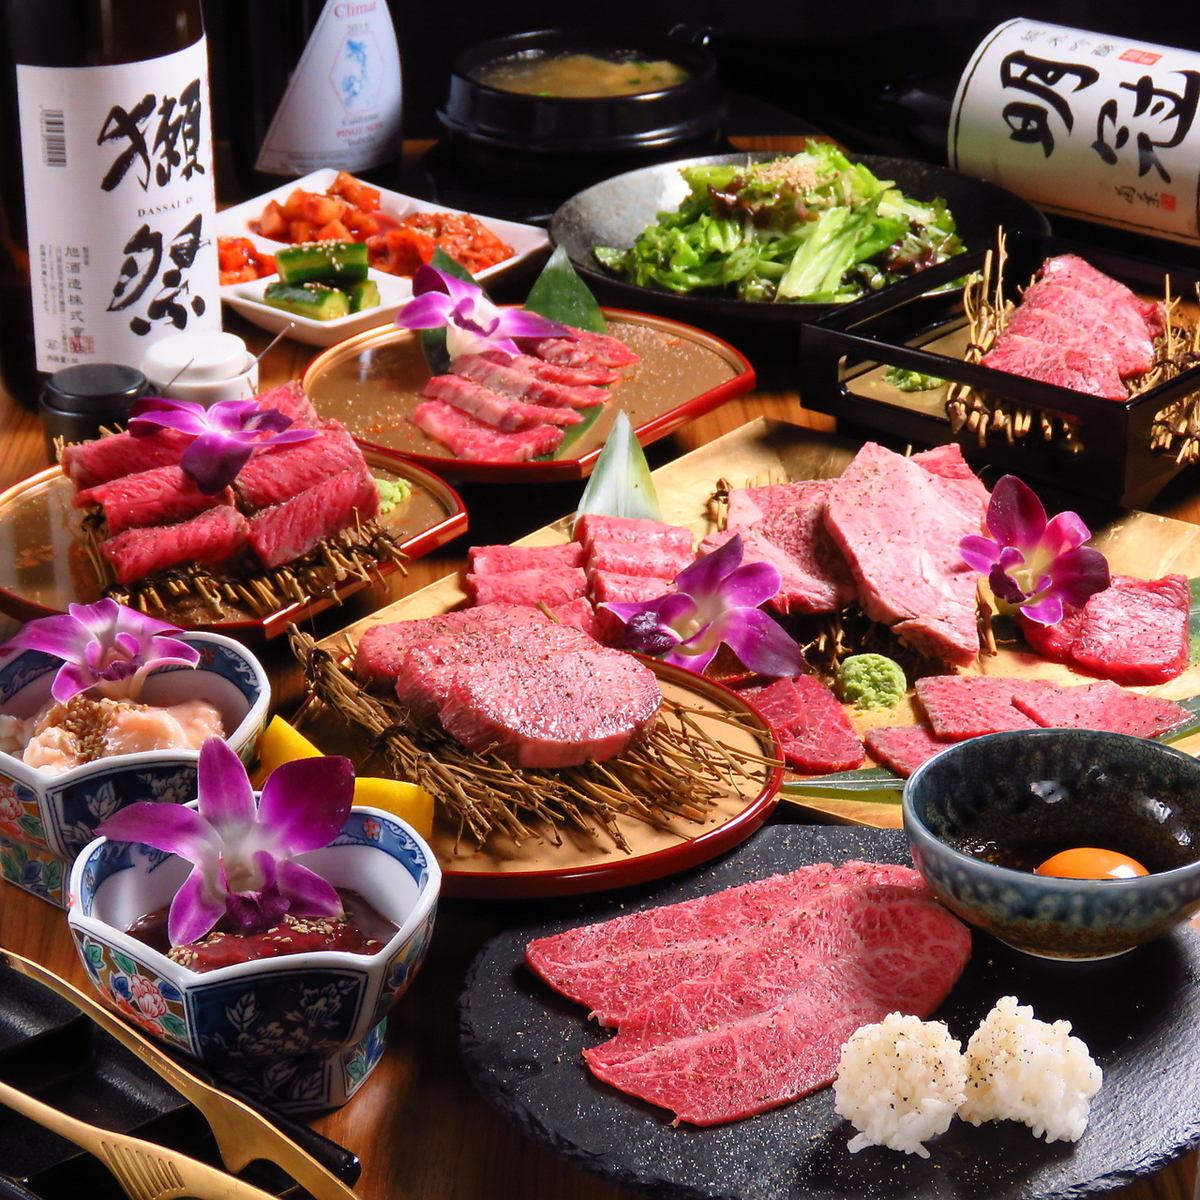 精选日本黑牛的精选材料。在完全私人的房间里享用新鲜的肉♪从稻毛站即到